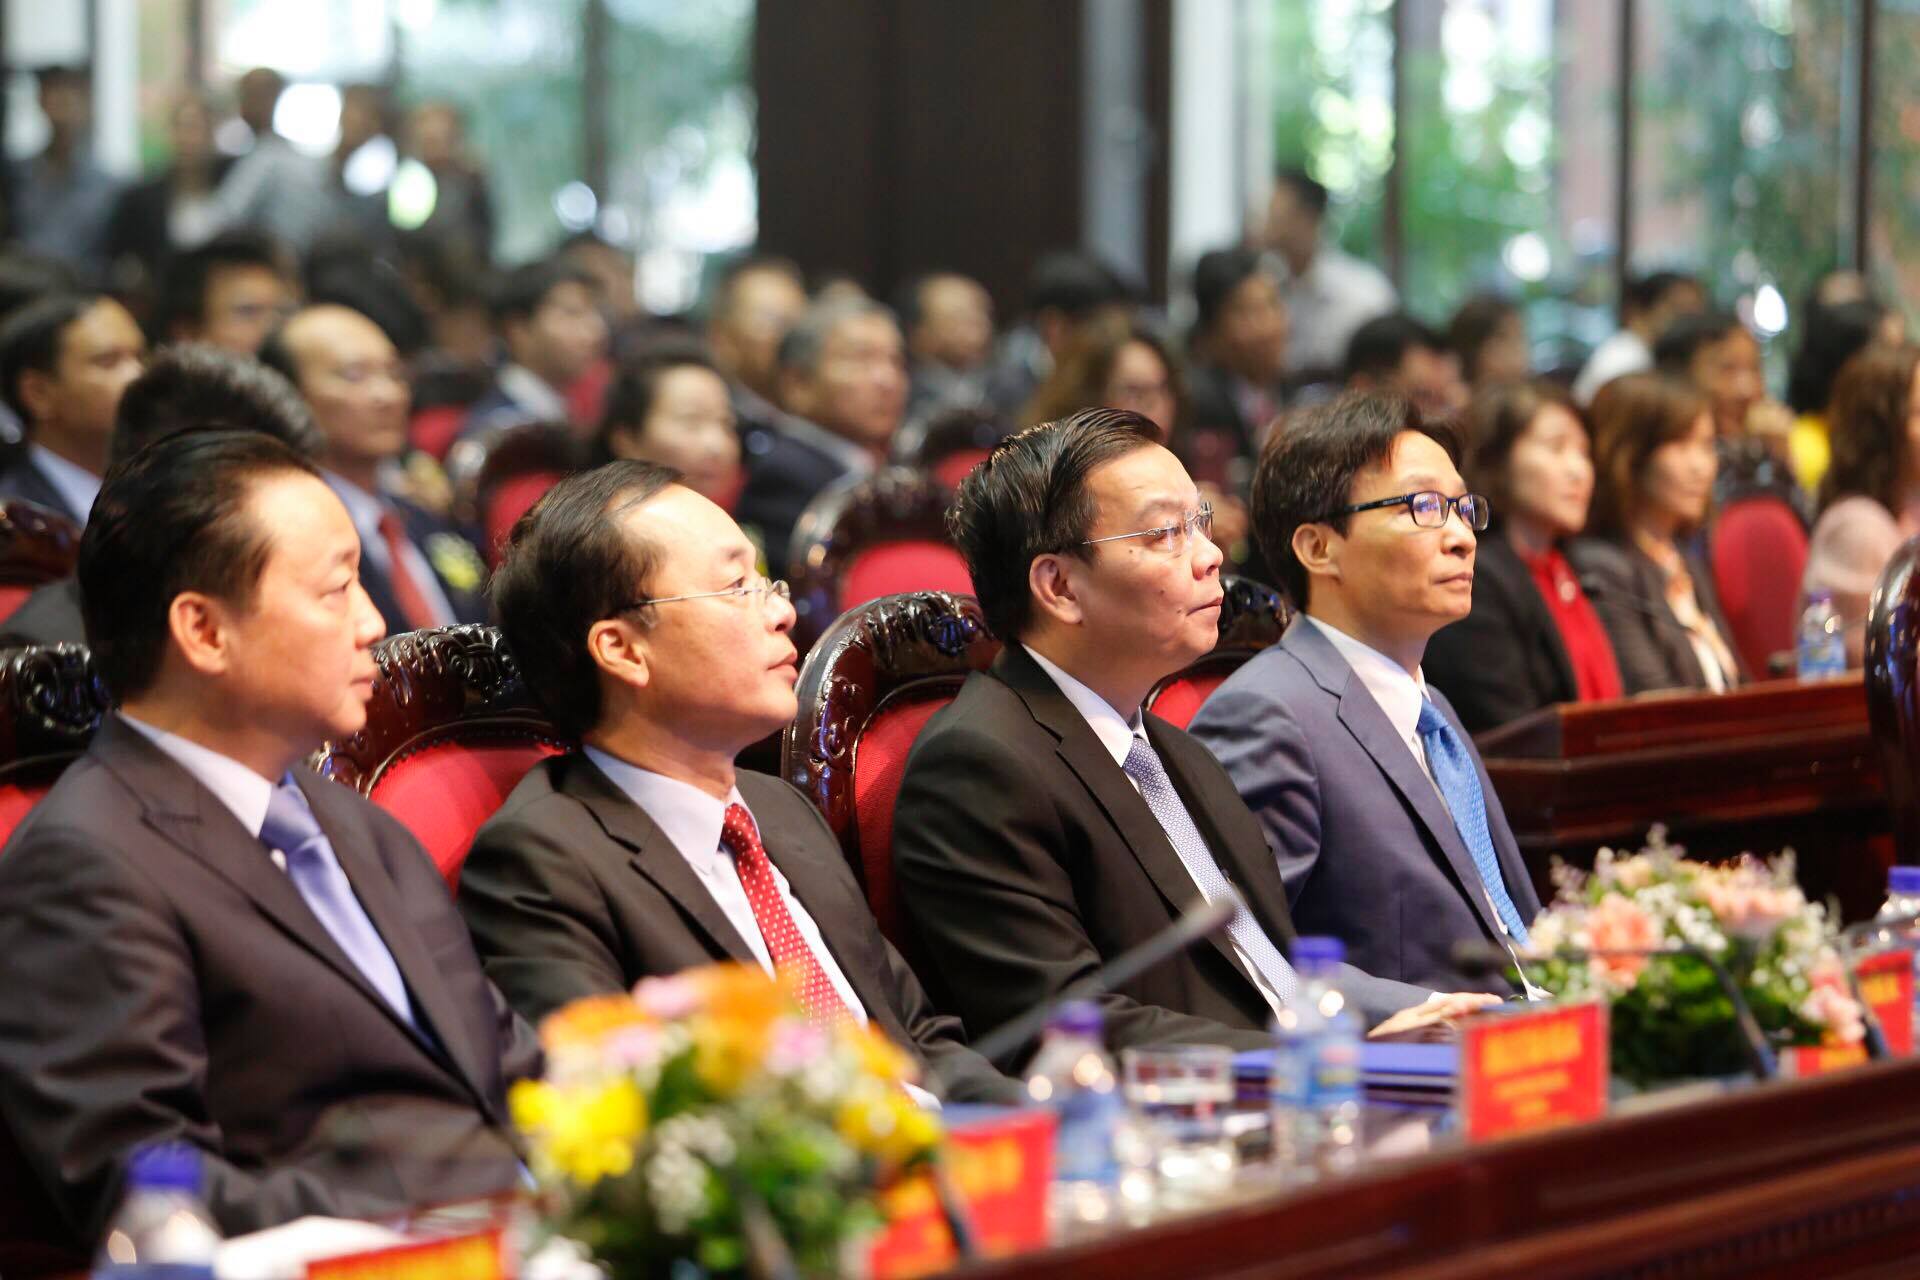 Phó Thủ tướng Vũ Đức Đam và các Bộ trưởng Bộ KH&CN Chu Ngọc Anh, Bộ trưởng Bộ Xây dựng Phạm Hồng Hà, Bộ trưởng Bộ trưởng Bộ Tài nguyên và Môi trường Trần Hồng Hà tham dự lễ trao giải.